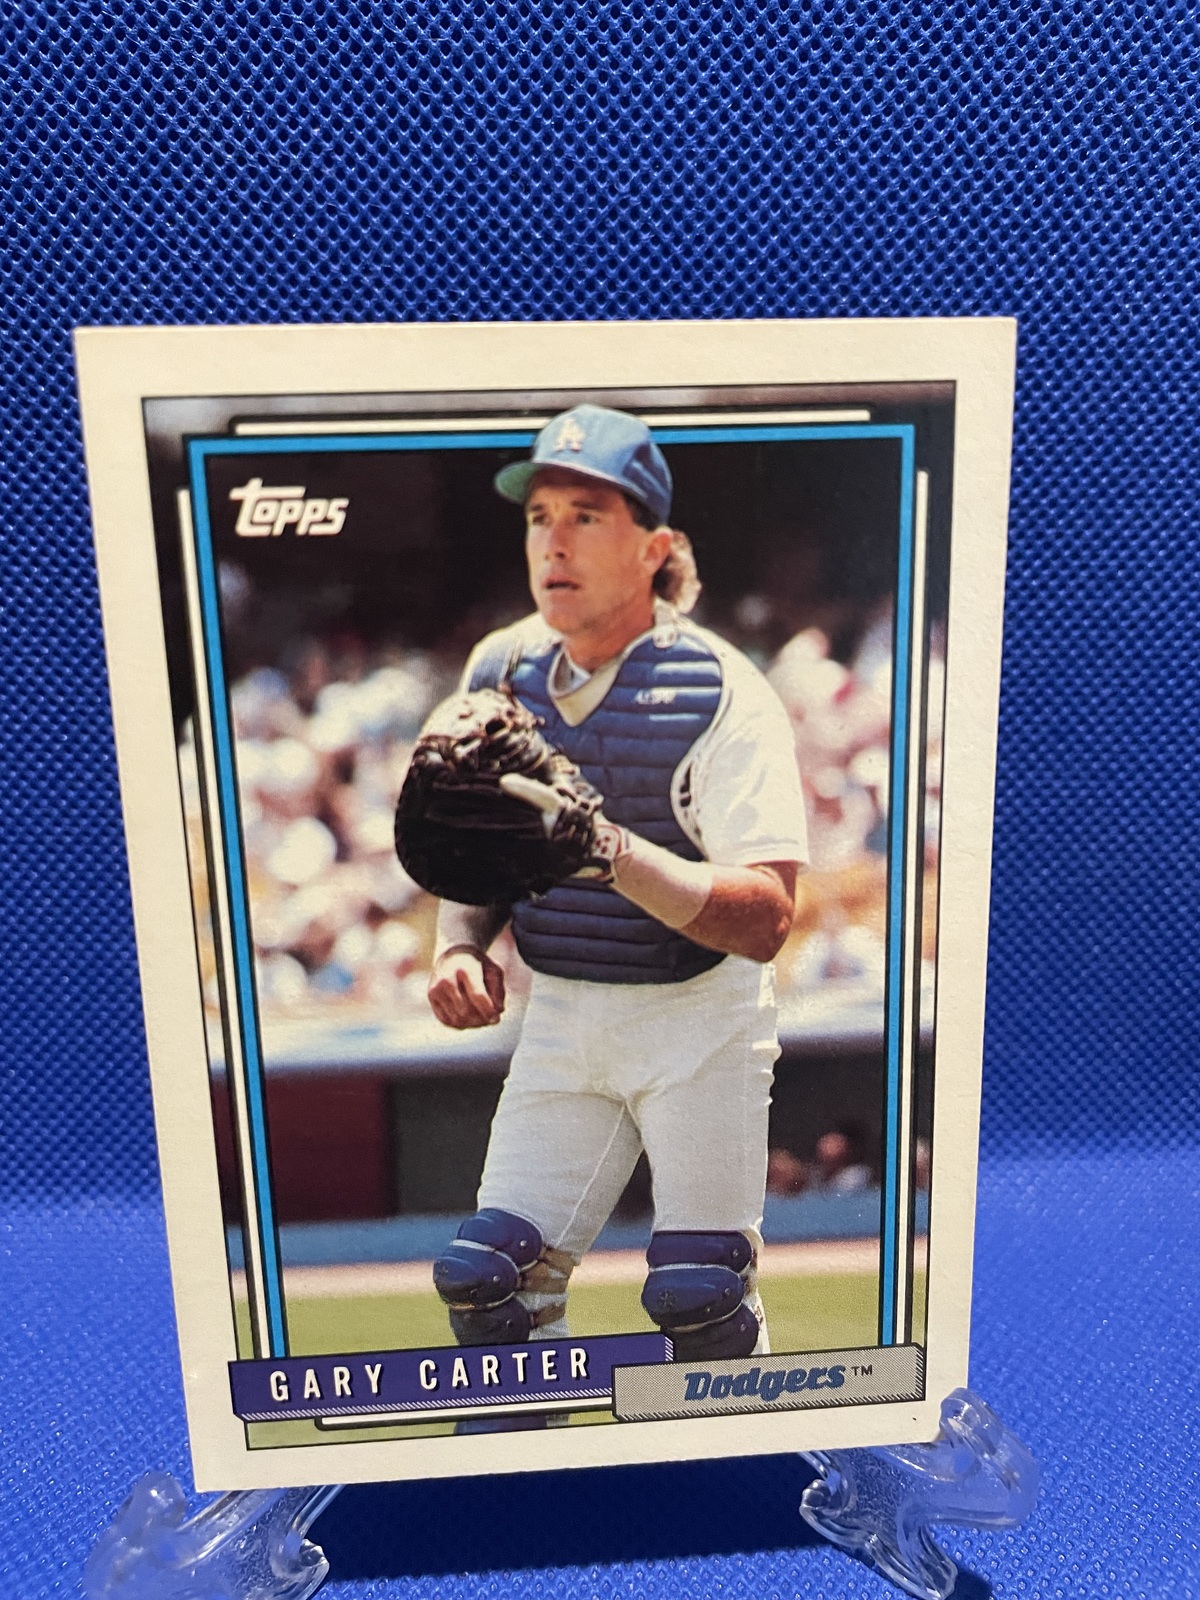 Primary image for Gary Carter 1992 Topps Baseball Card # 45